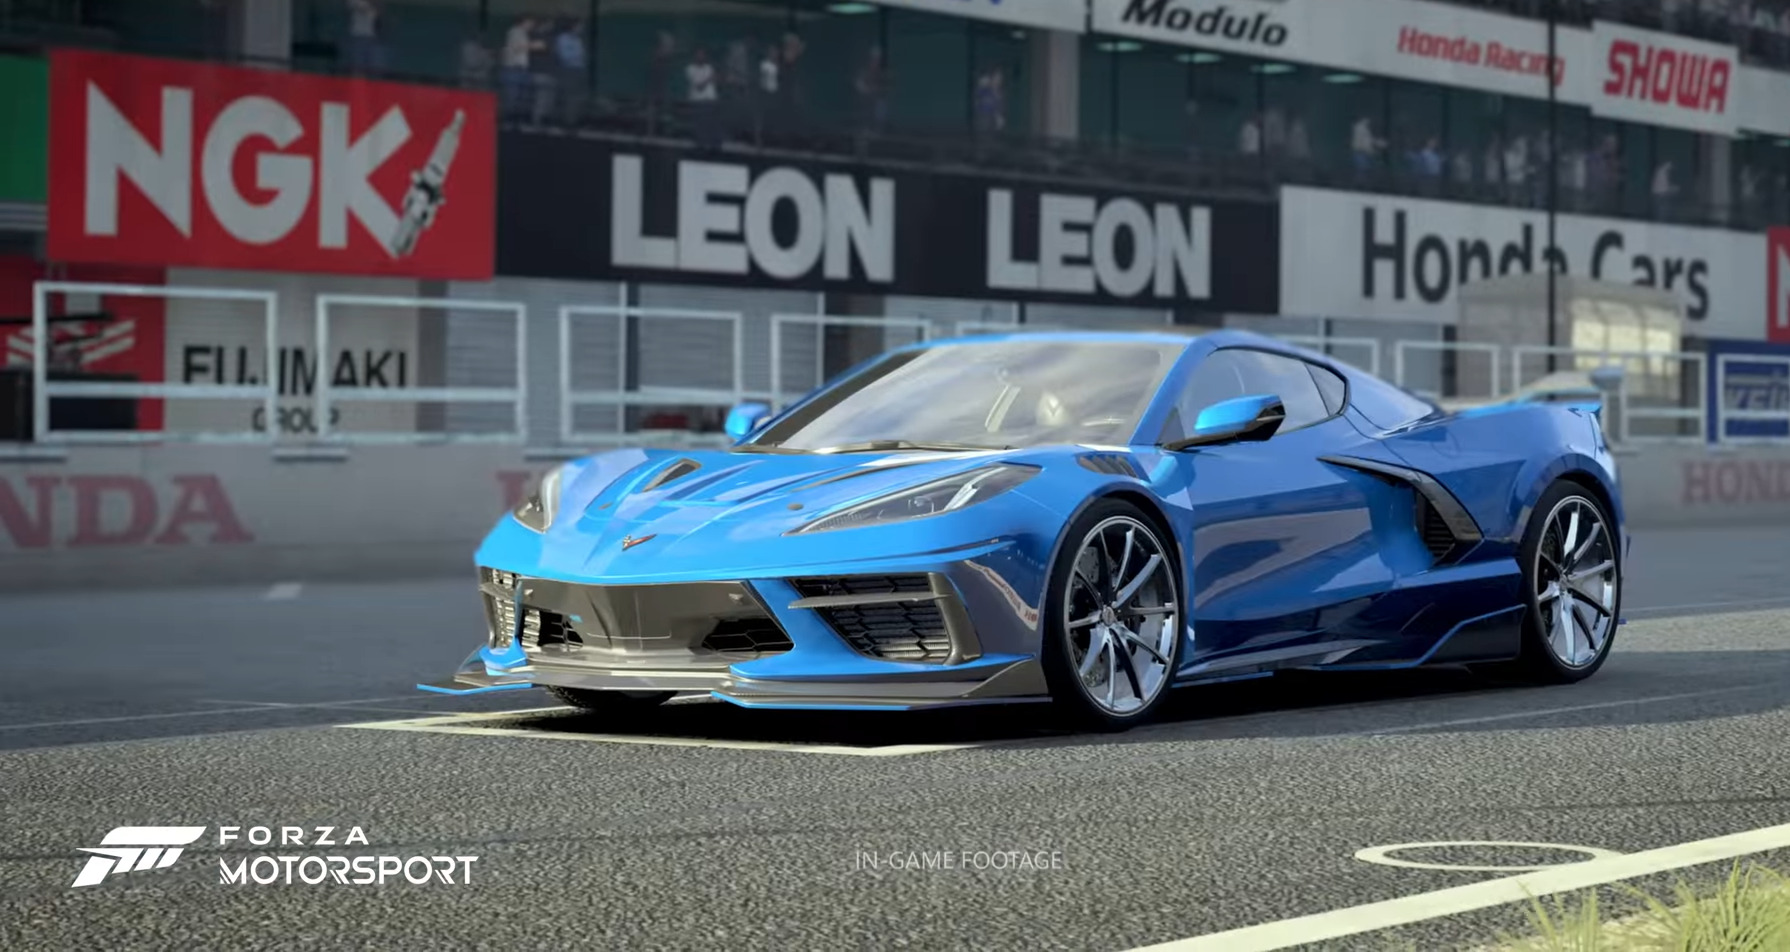 Forza Motorsport capa 002